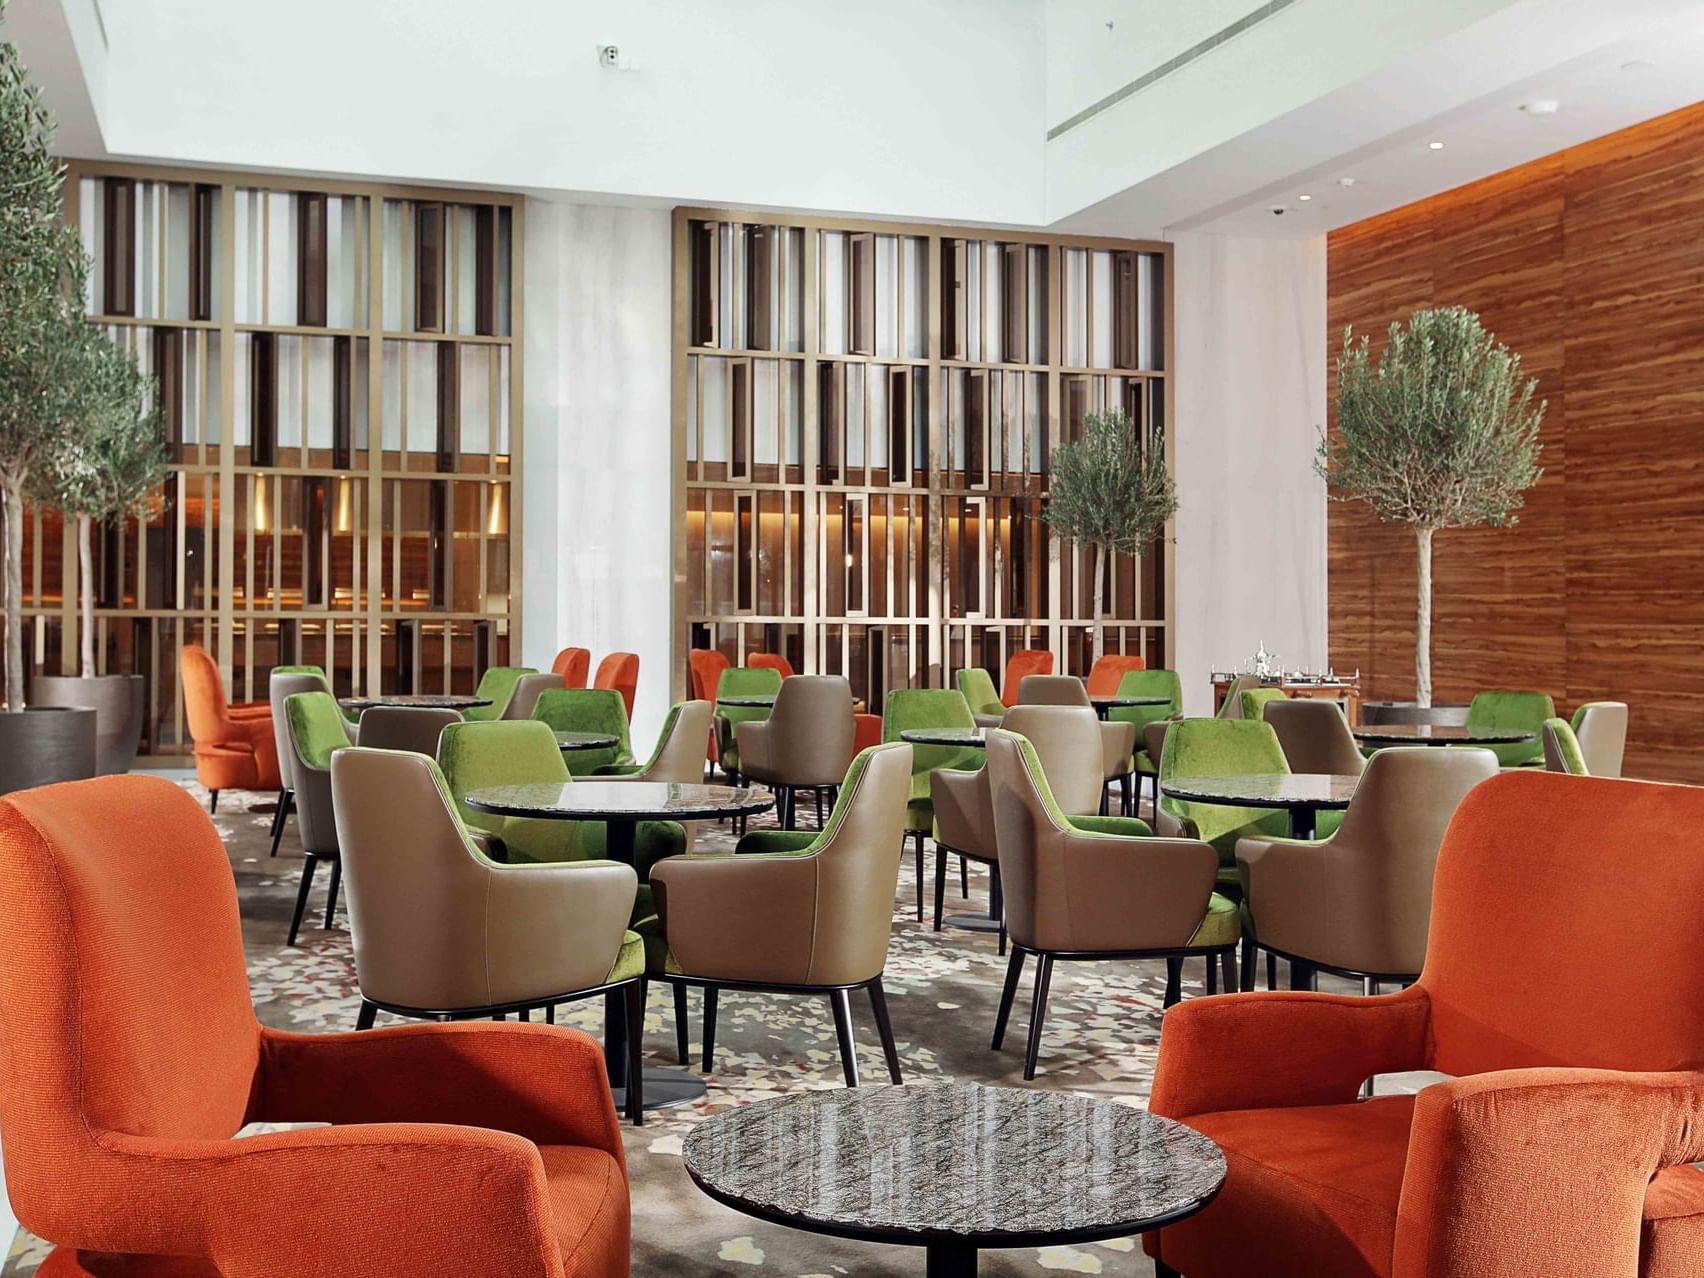 Americano Cafe & Lounge at Grand Cosmopolitan Hotel in Dubai